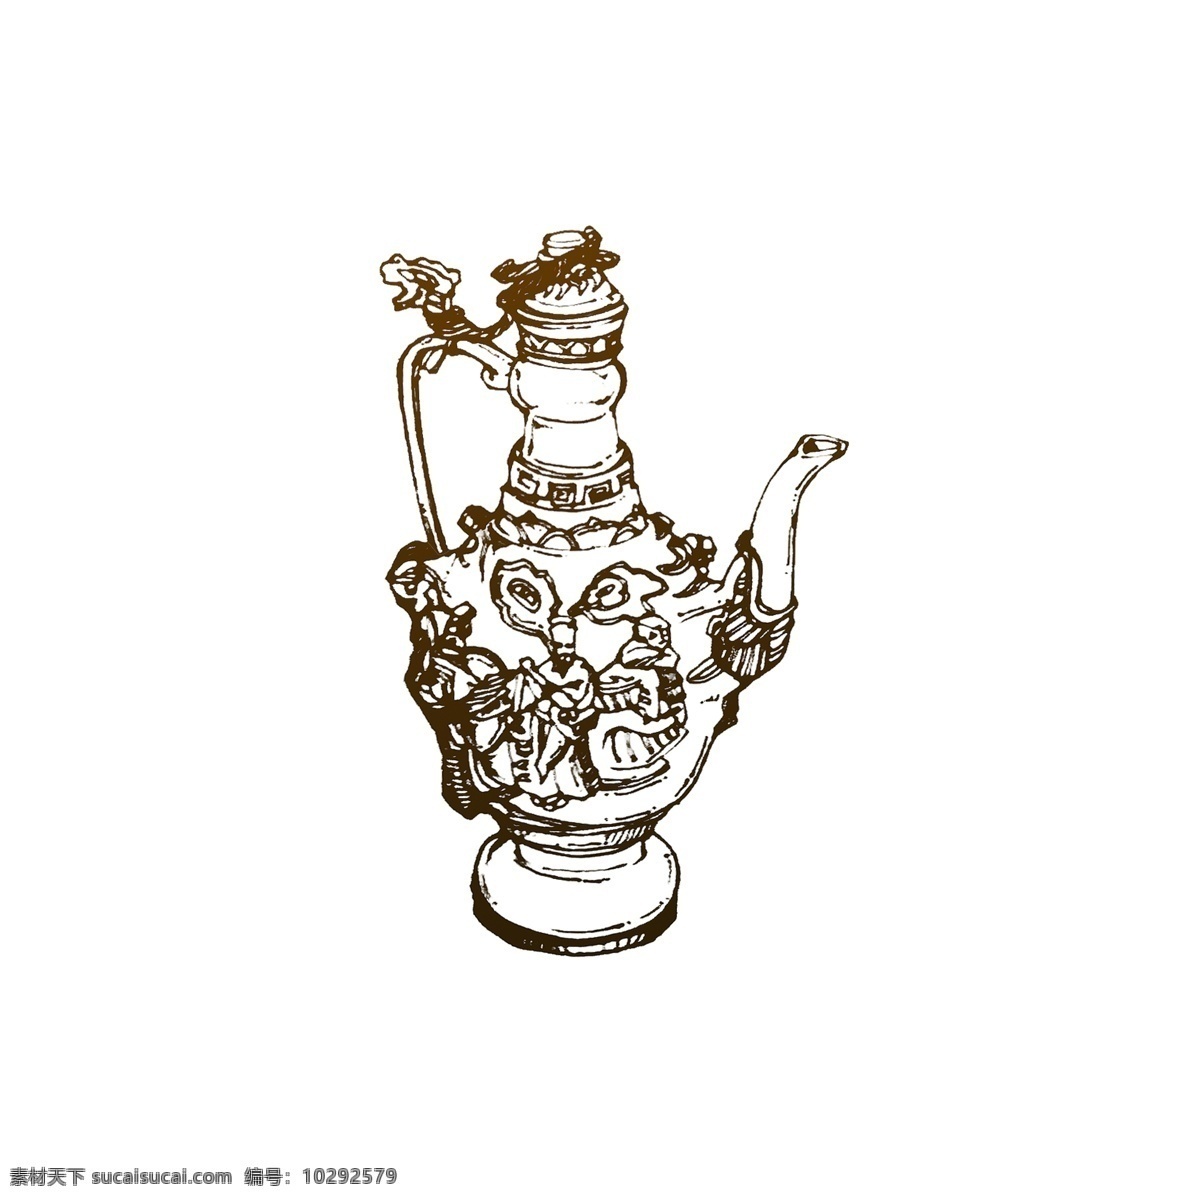 中式 浮雕 酒壶 茶壶 线性 速写 风 元素 中式酒壶 酒壶元素 线性风 浮雕酒壶